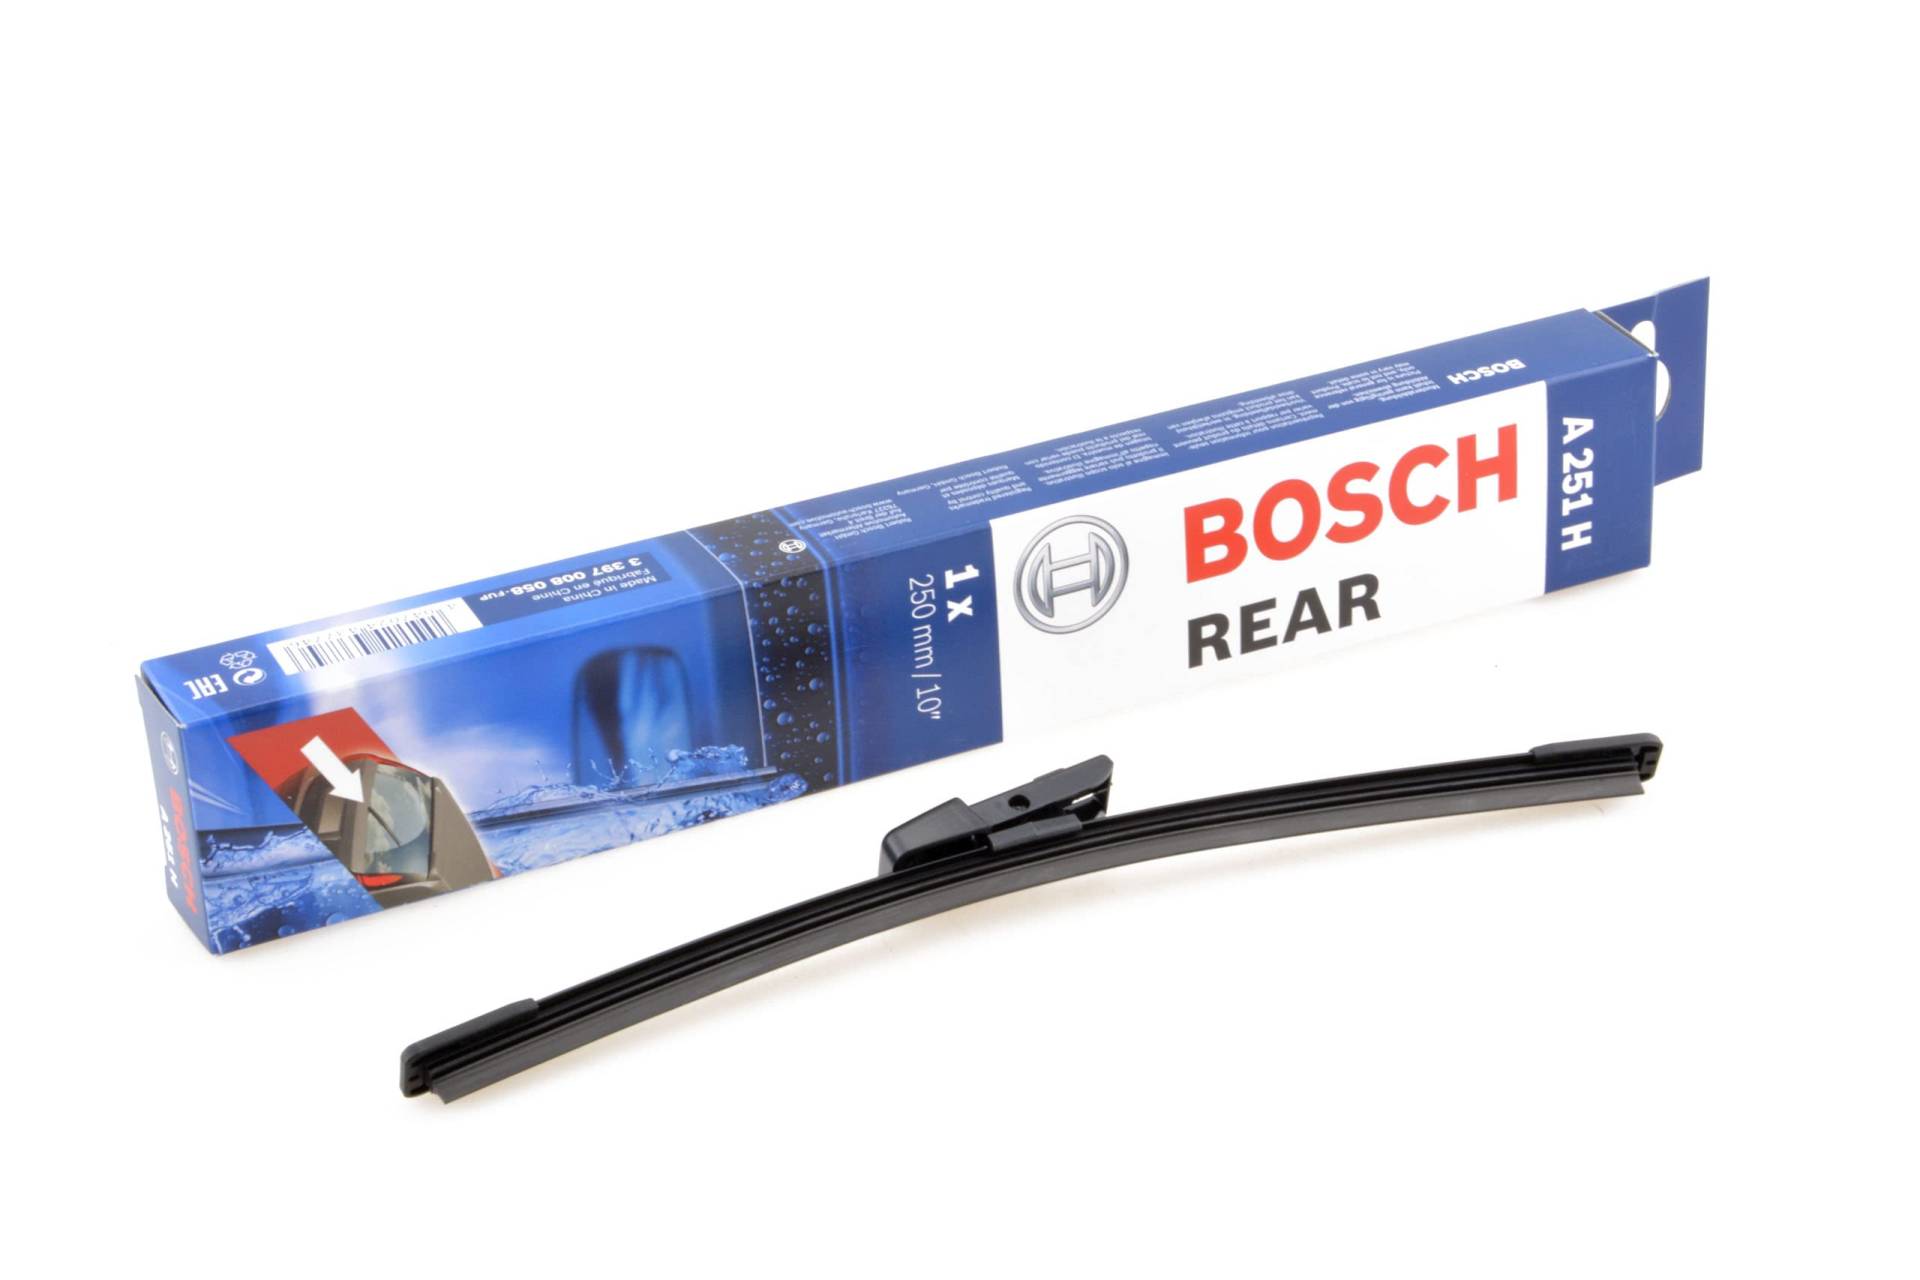 Scheibenwischer für Heckscheibe kompatibel mit Skoda Citigo Bj. 2011-2019 ideal angepasst Bosch TWIN von KO-BOSCHAEROECO